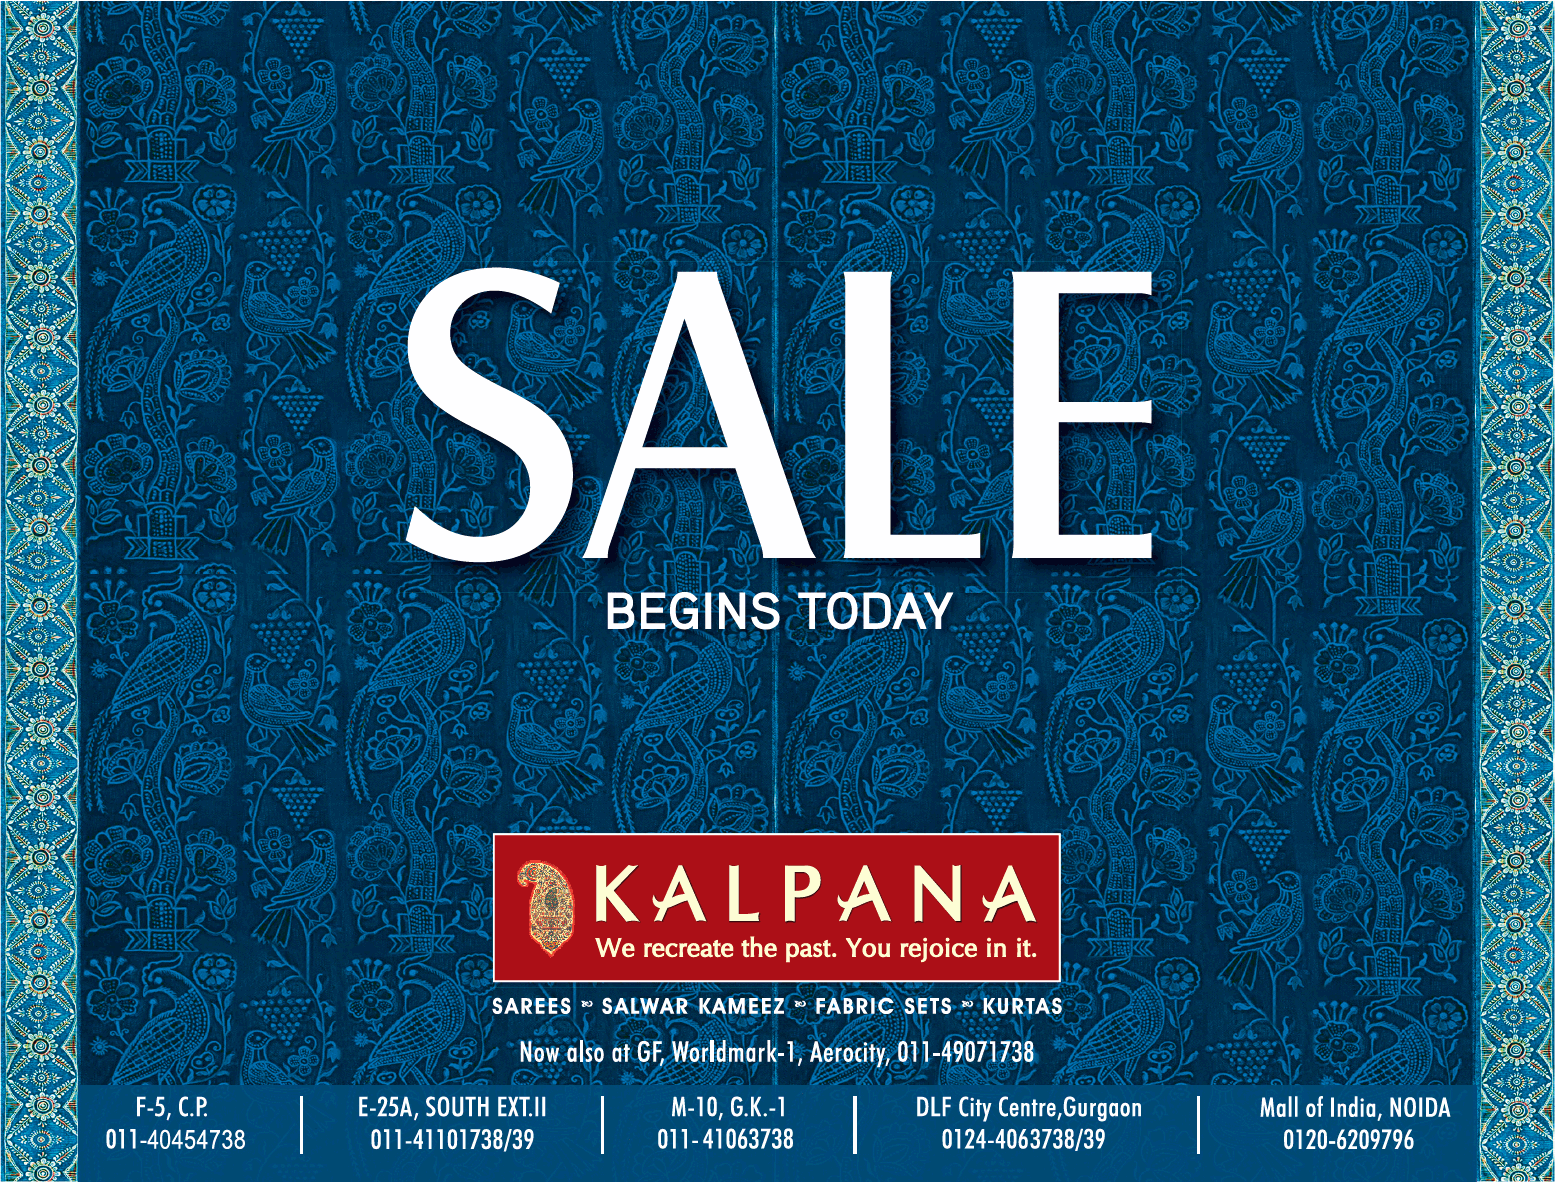 kalpana-sarees-salwar-kameez-sale-begins-today-ad-times-of-india-delhi-06-07-2019.png